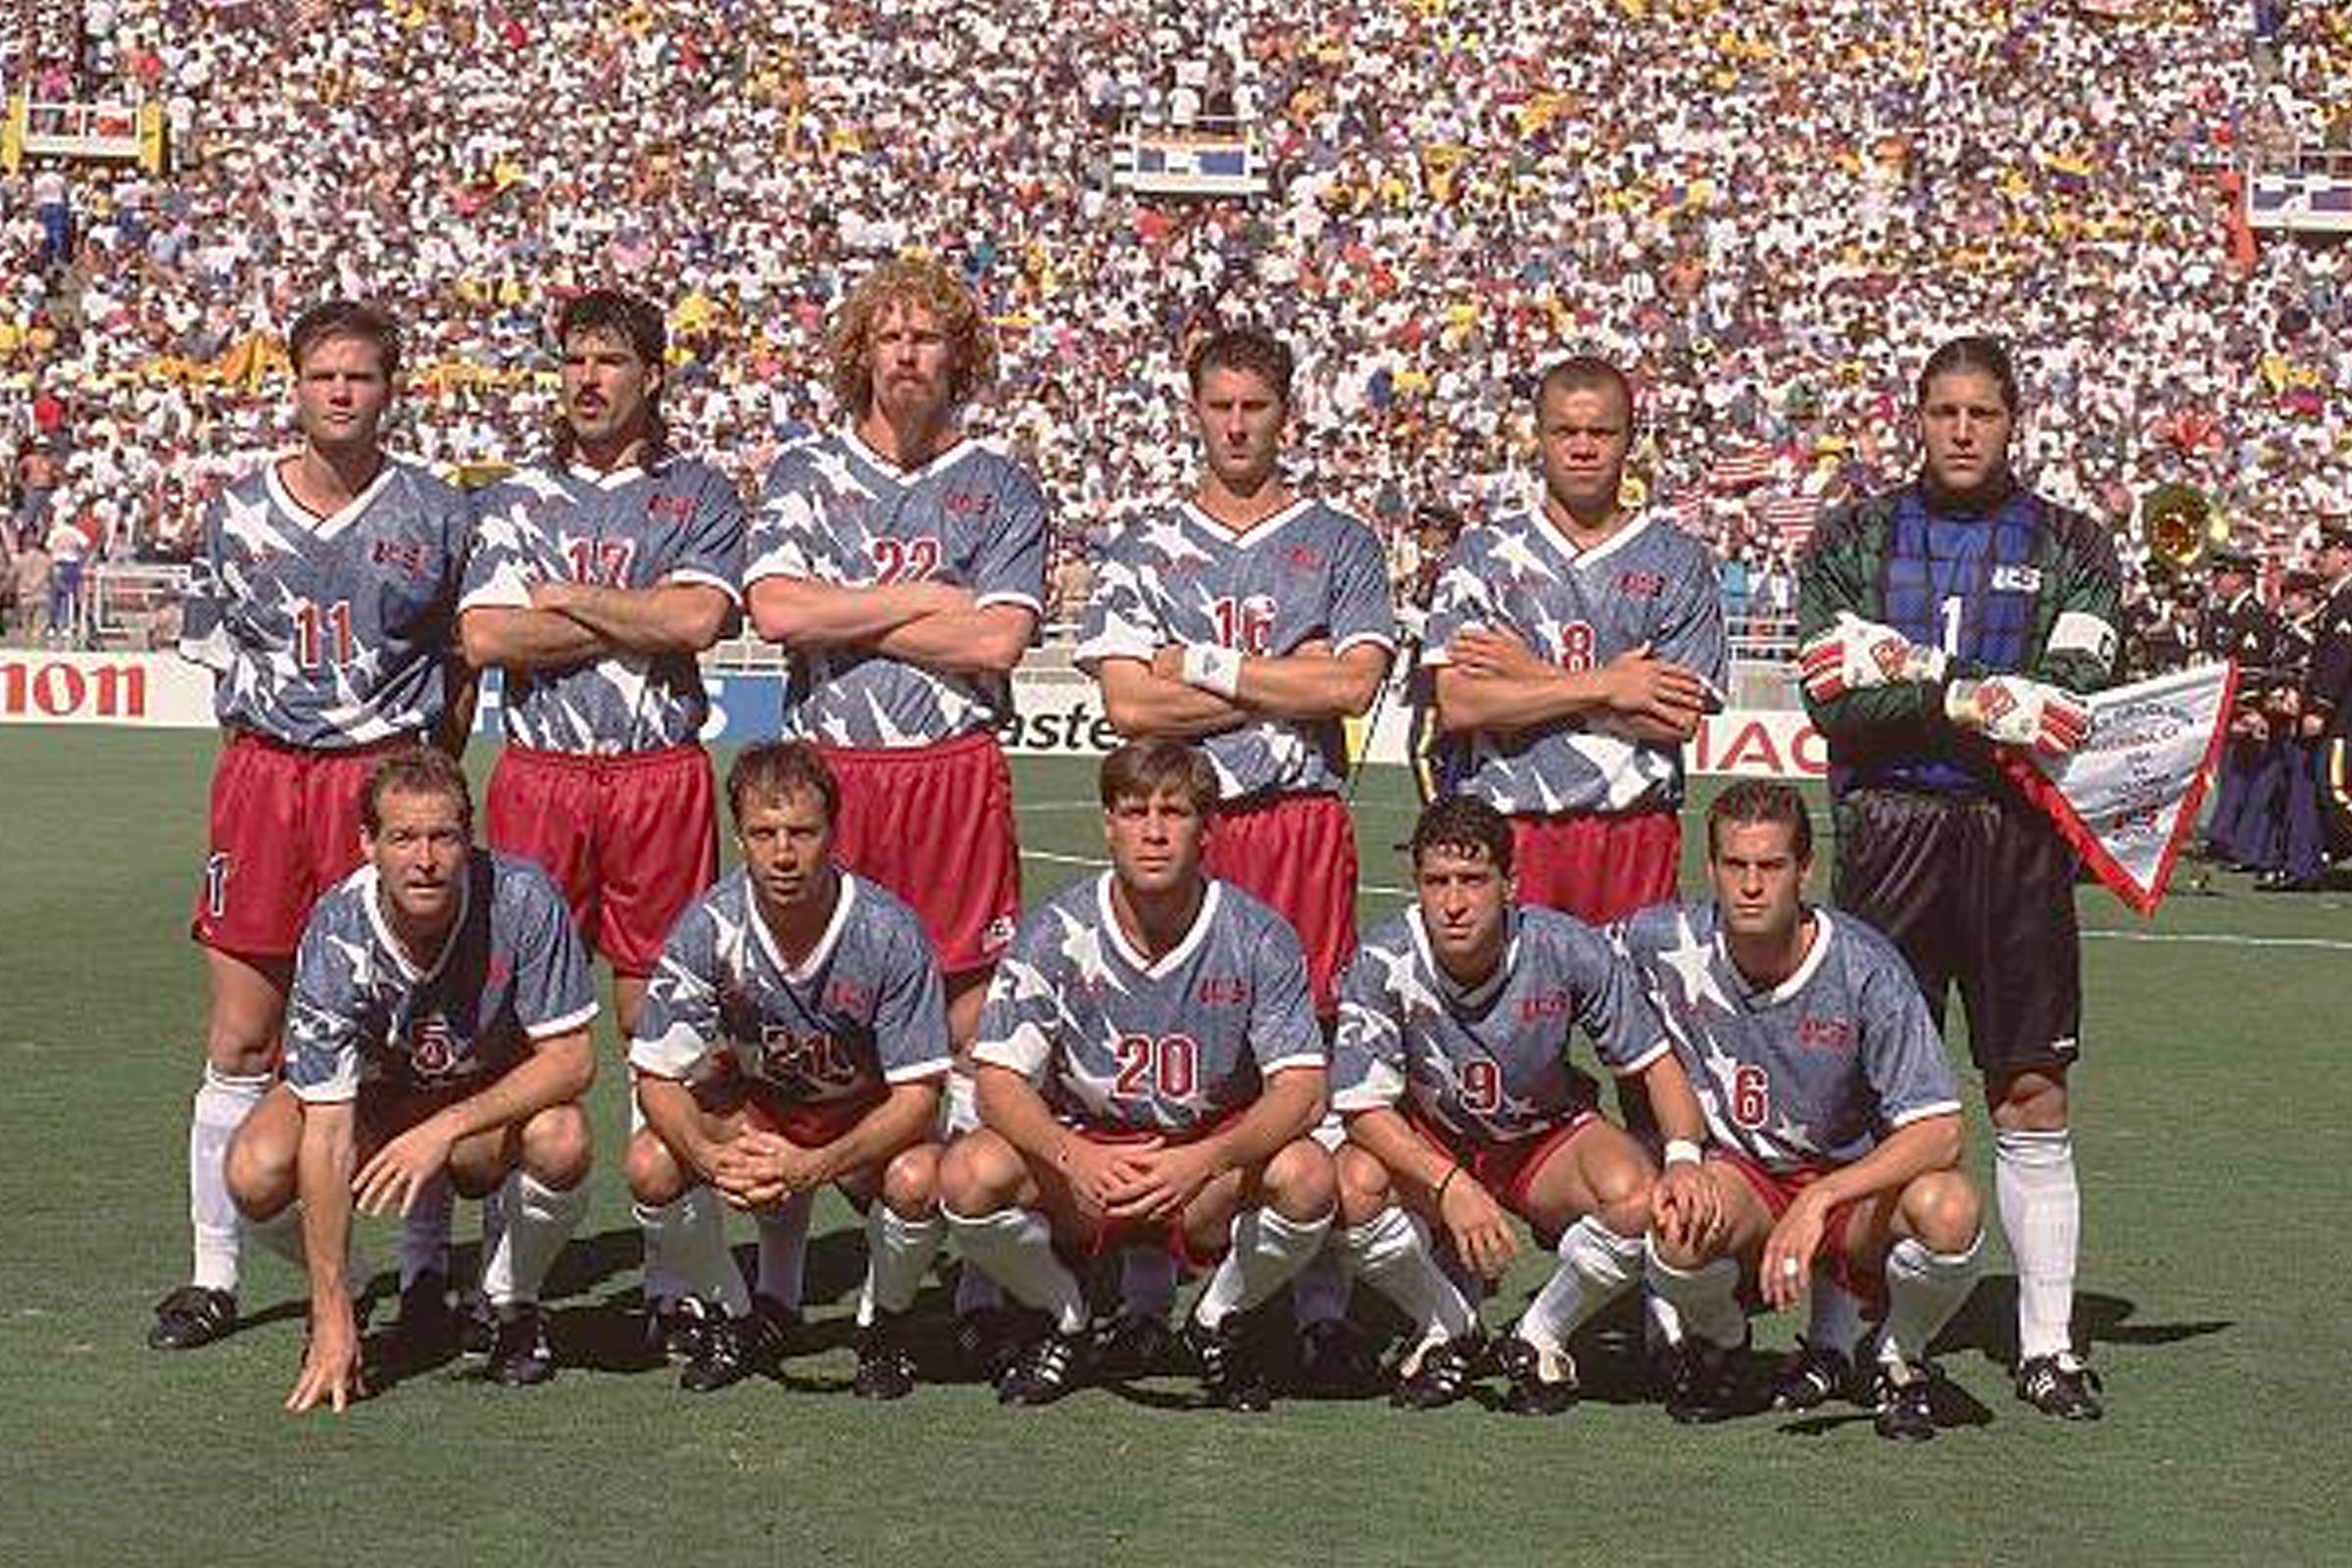 1994 какие люди. Сборная США по футболу 1994 года. Ворлд кап 1994. ЧМ 1994 США Швейцария.